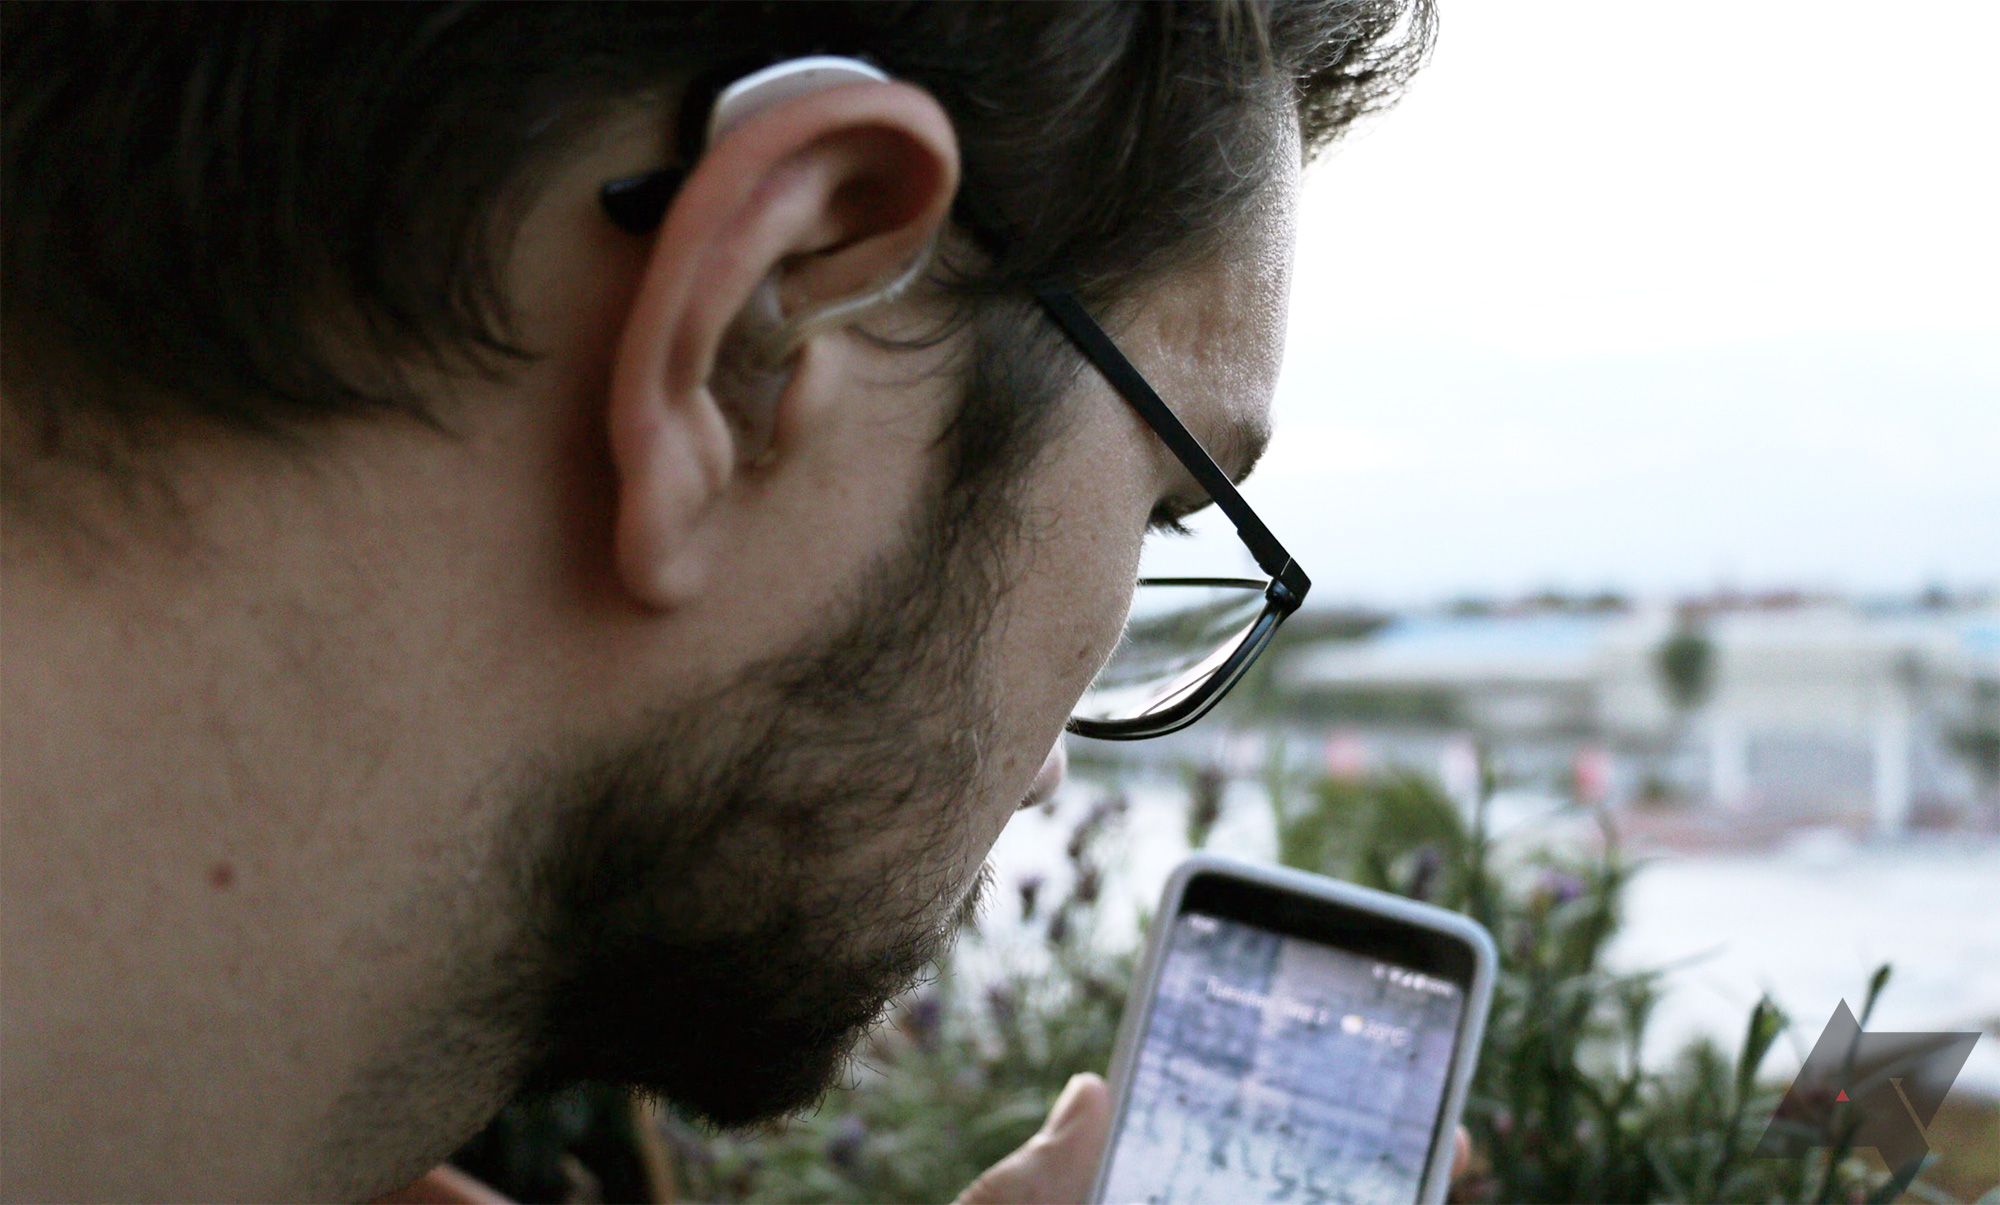 Um homem está de costas para a câmera, com um aparelho auditivo visível no ouvido.  Ele está olhando para um telefone com a tela ligada.